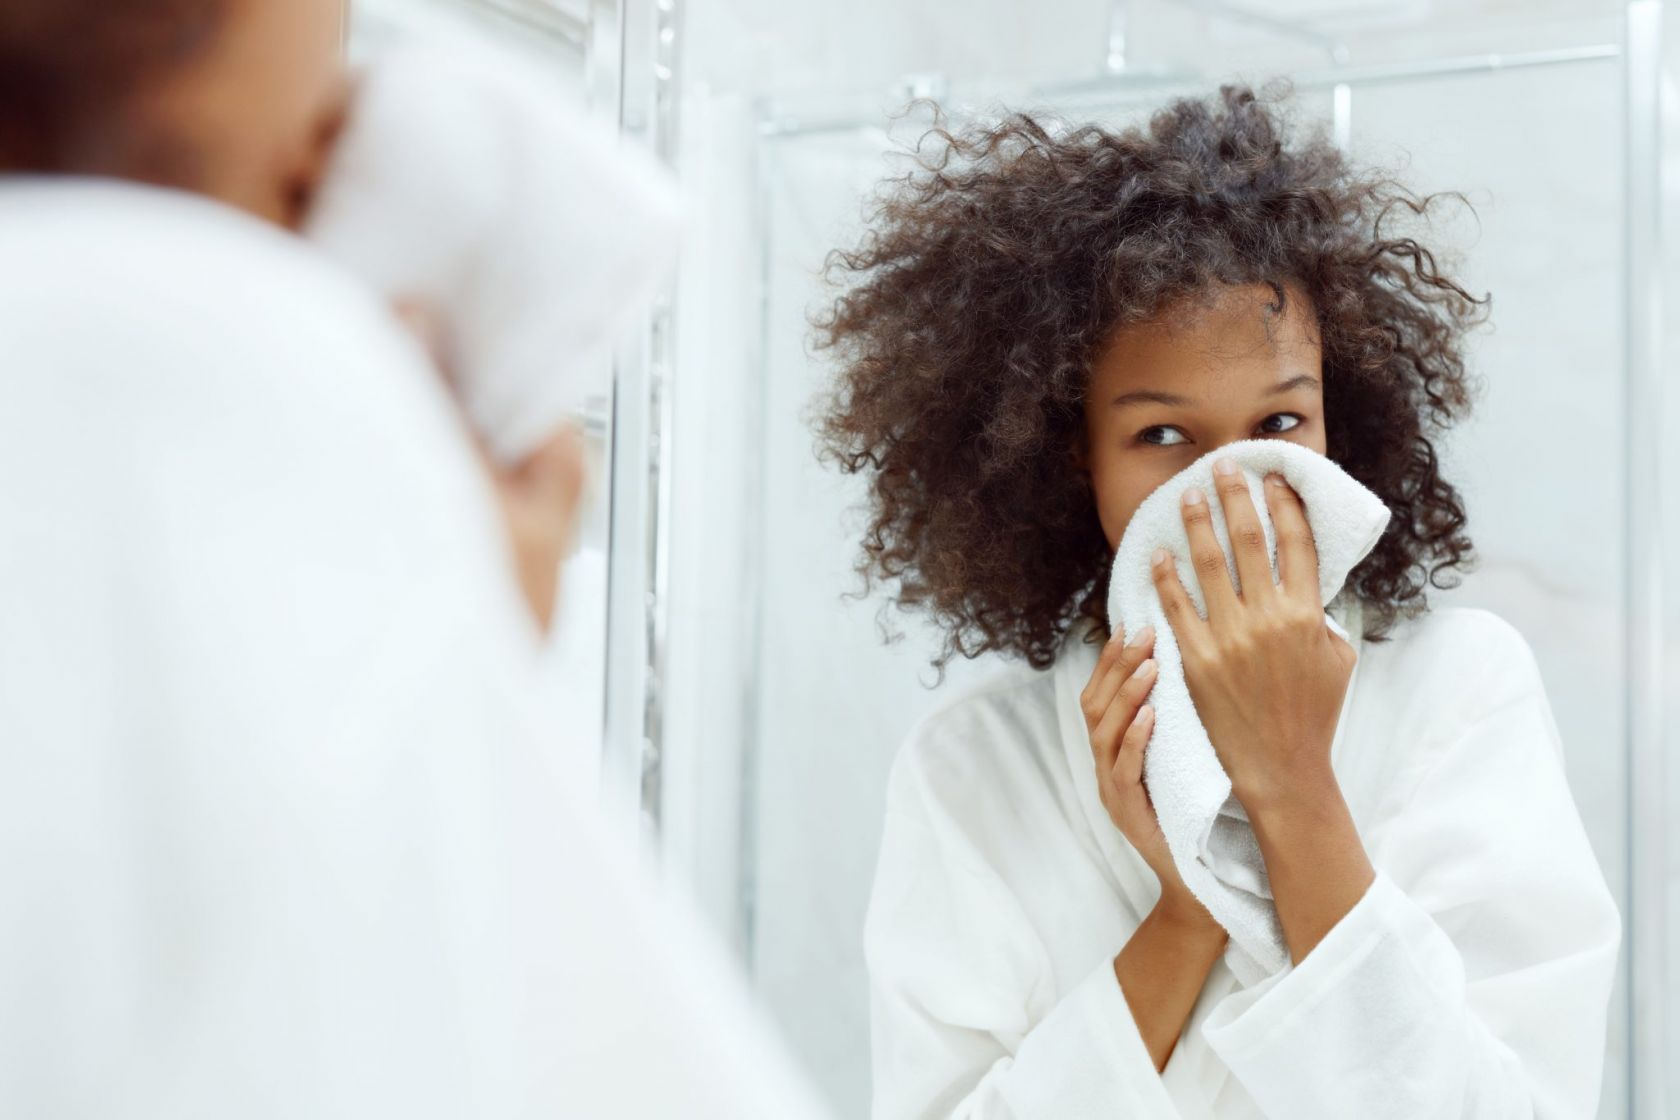 Исследователи заметили, вынимая белье из стиральных машин потребители отмечают его запах